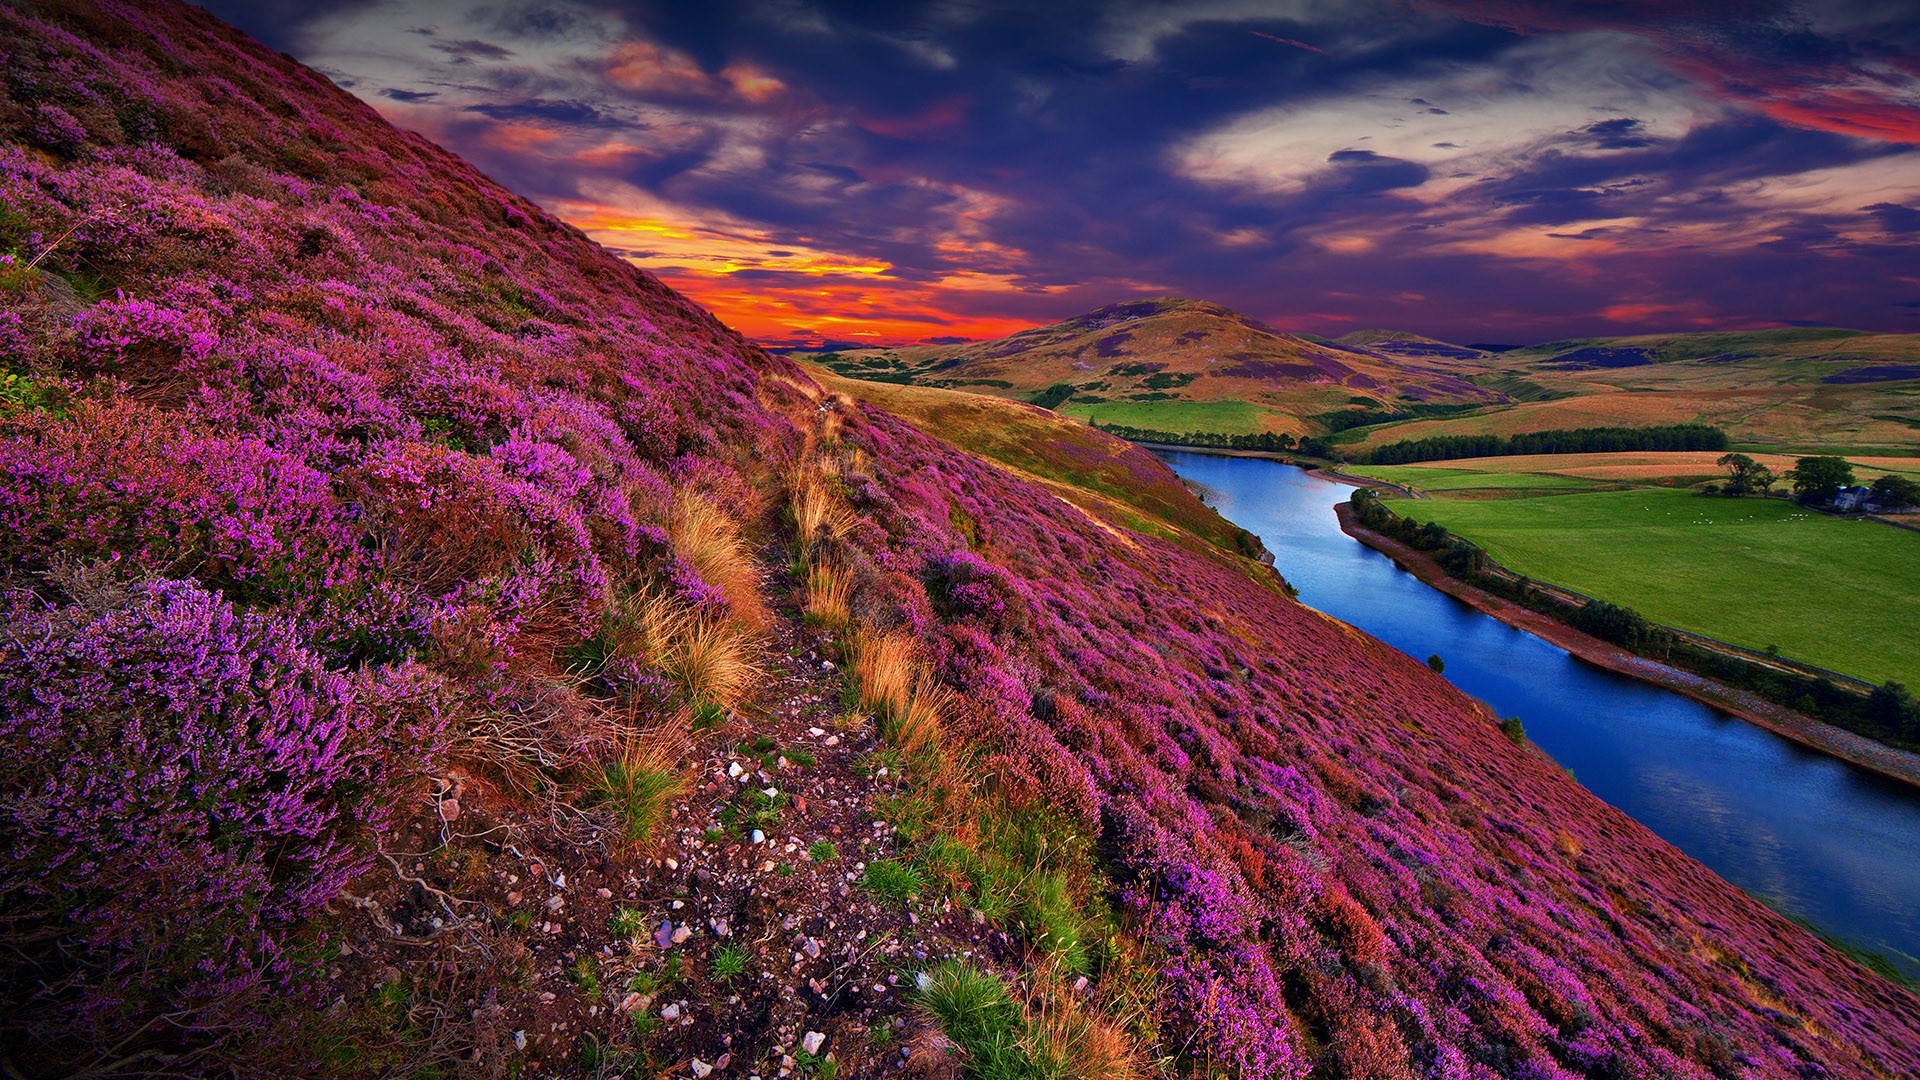 Скачать обои бесплатно Природа, Река, Закат, Небо, Облака, Цветок, Шотландия, Холм, Великобритания, Земля/природа картинка на рабочий стол ПК